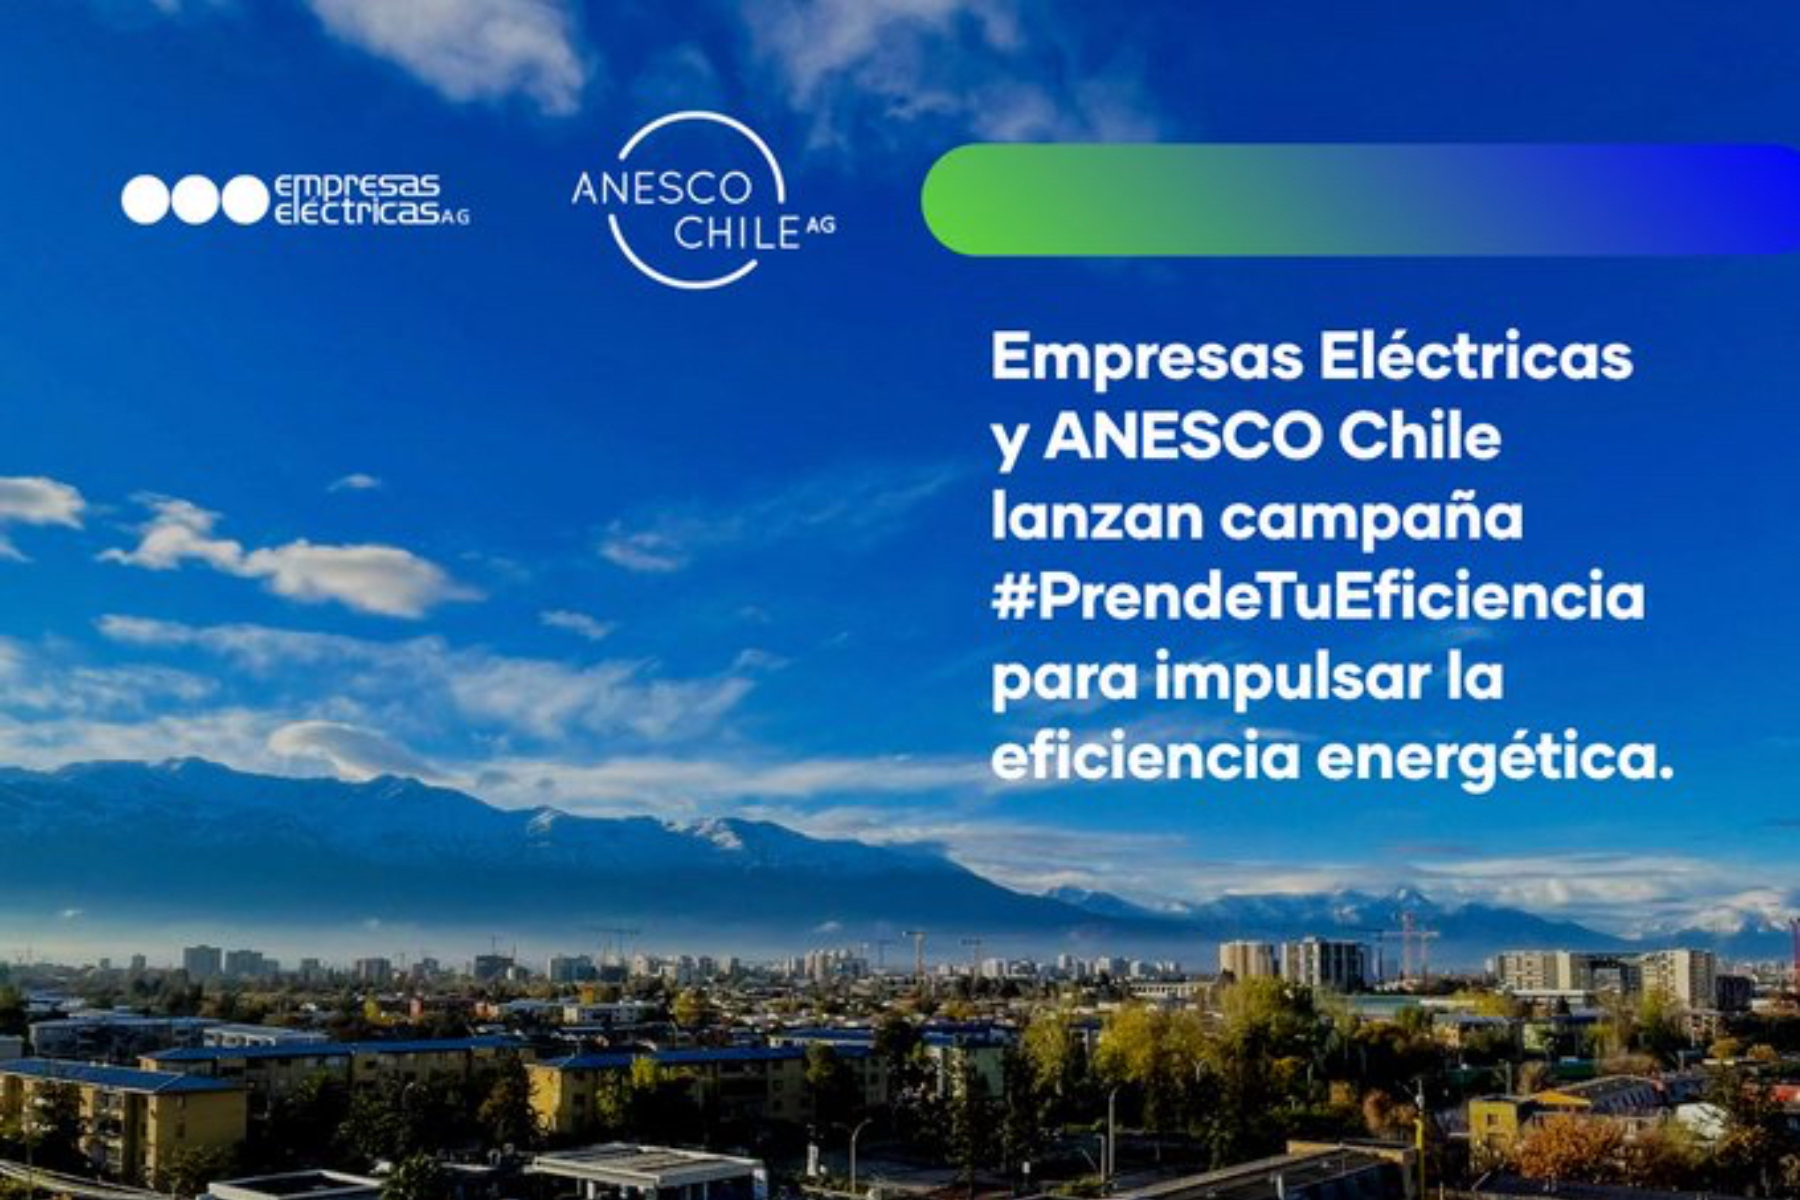 Empresas Eléctricas y Anesco lanzan campaña para potenciar eficiencia energética